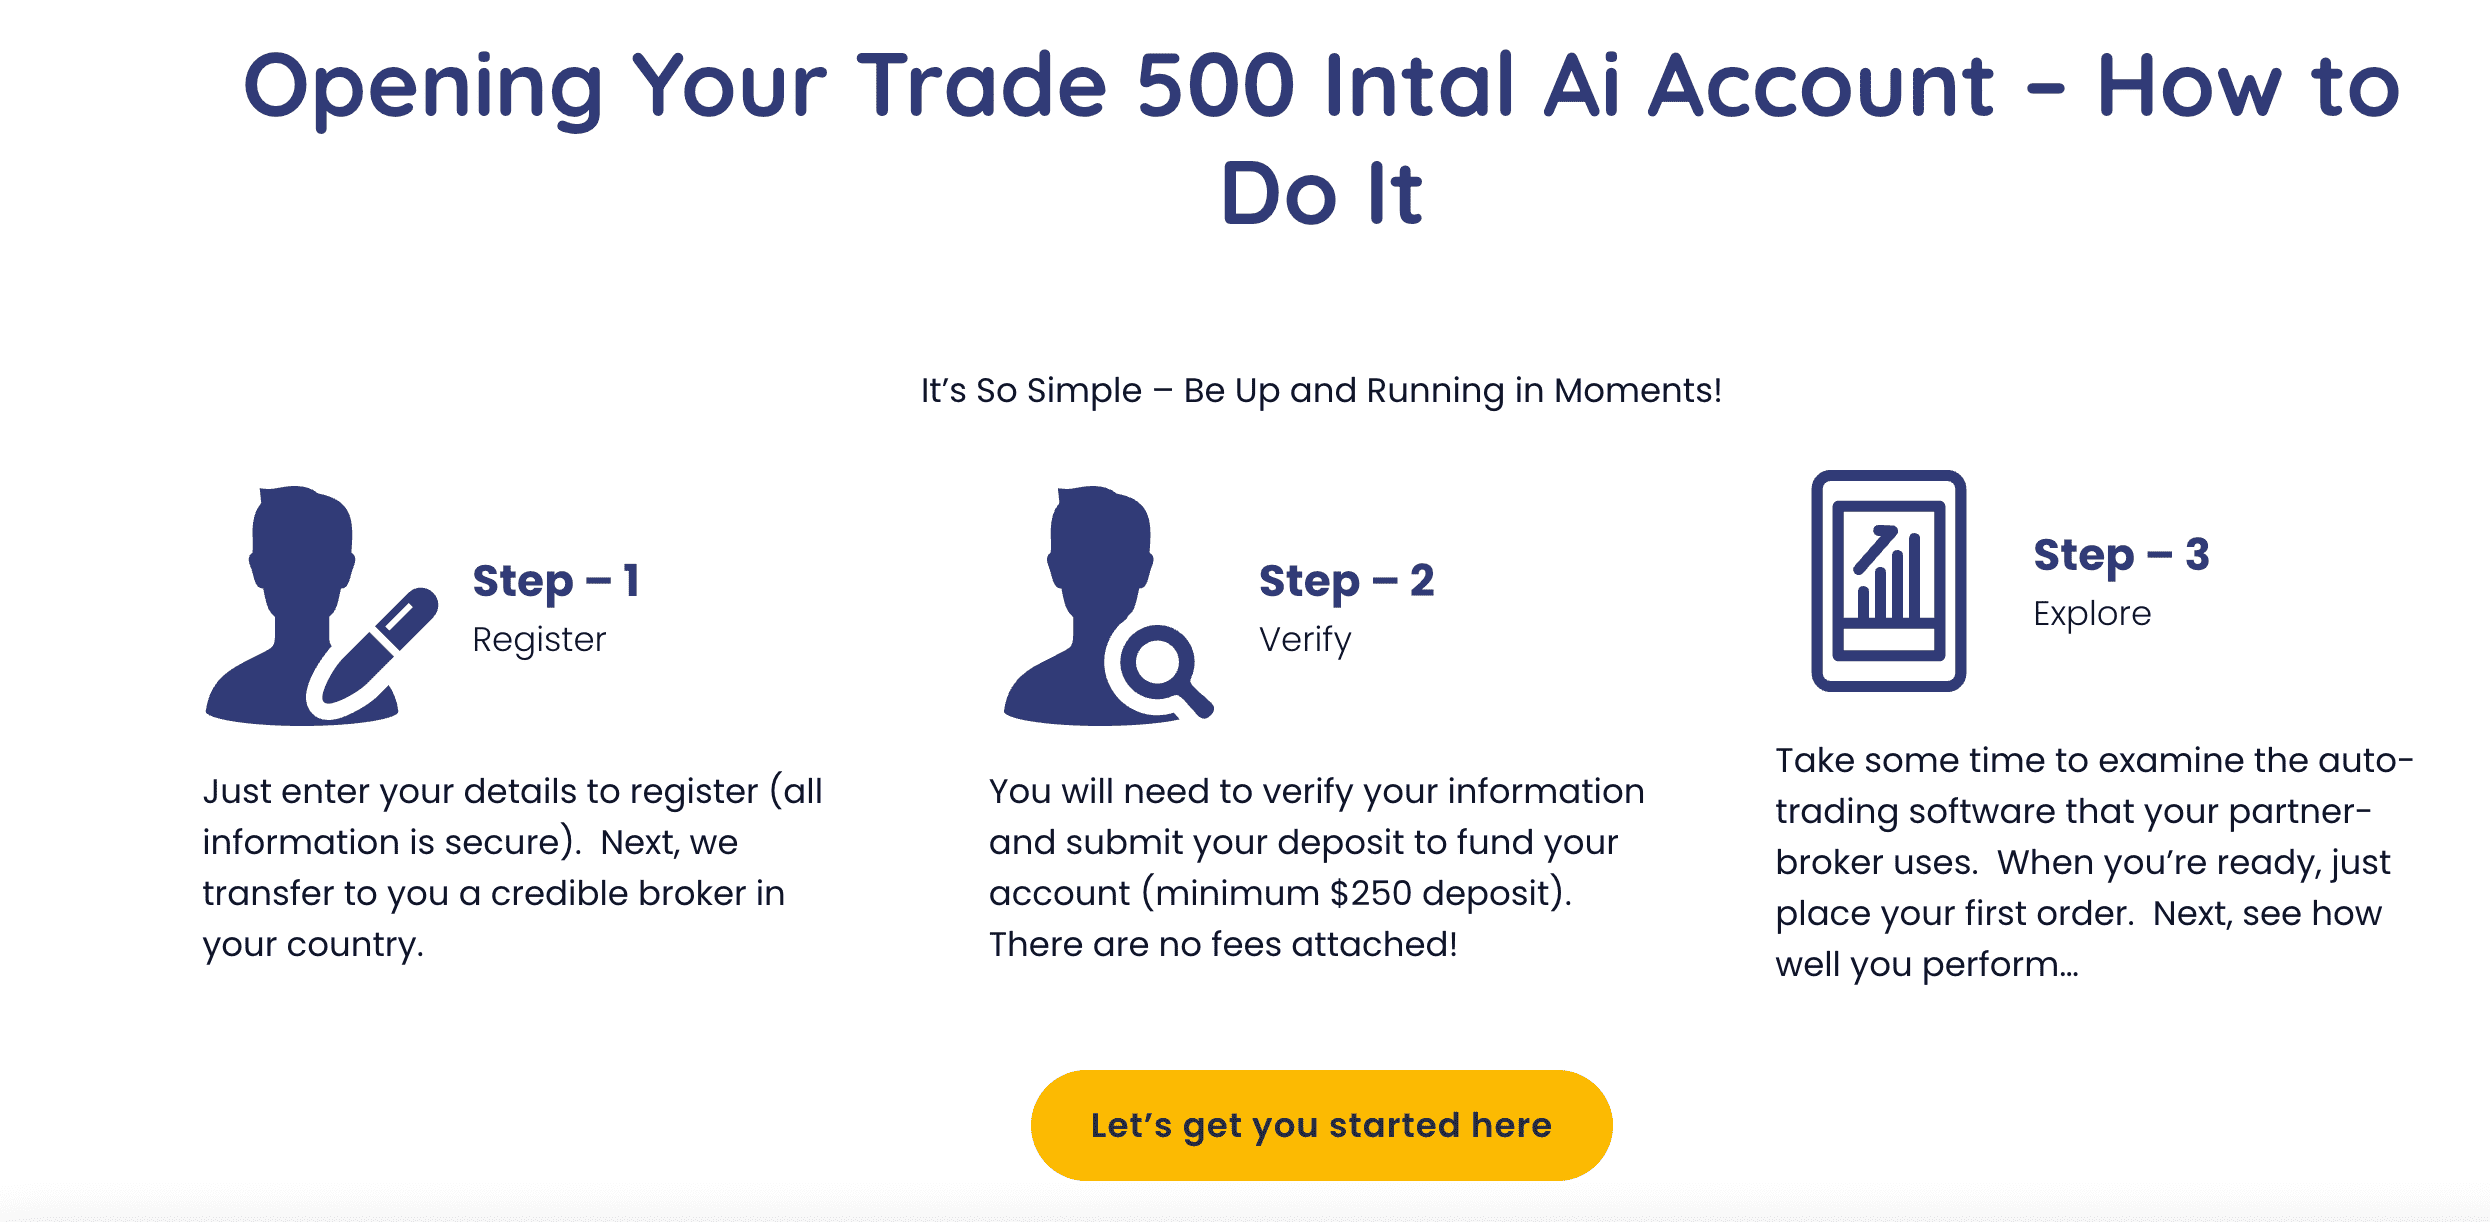 Uw Trade Intal Ai -account openen – hoe u dat doet  